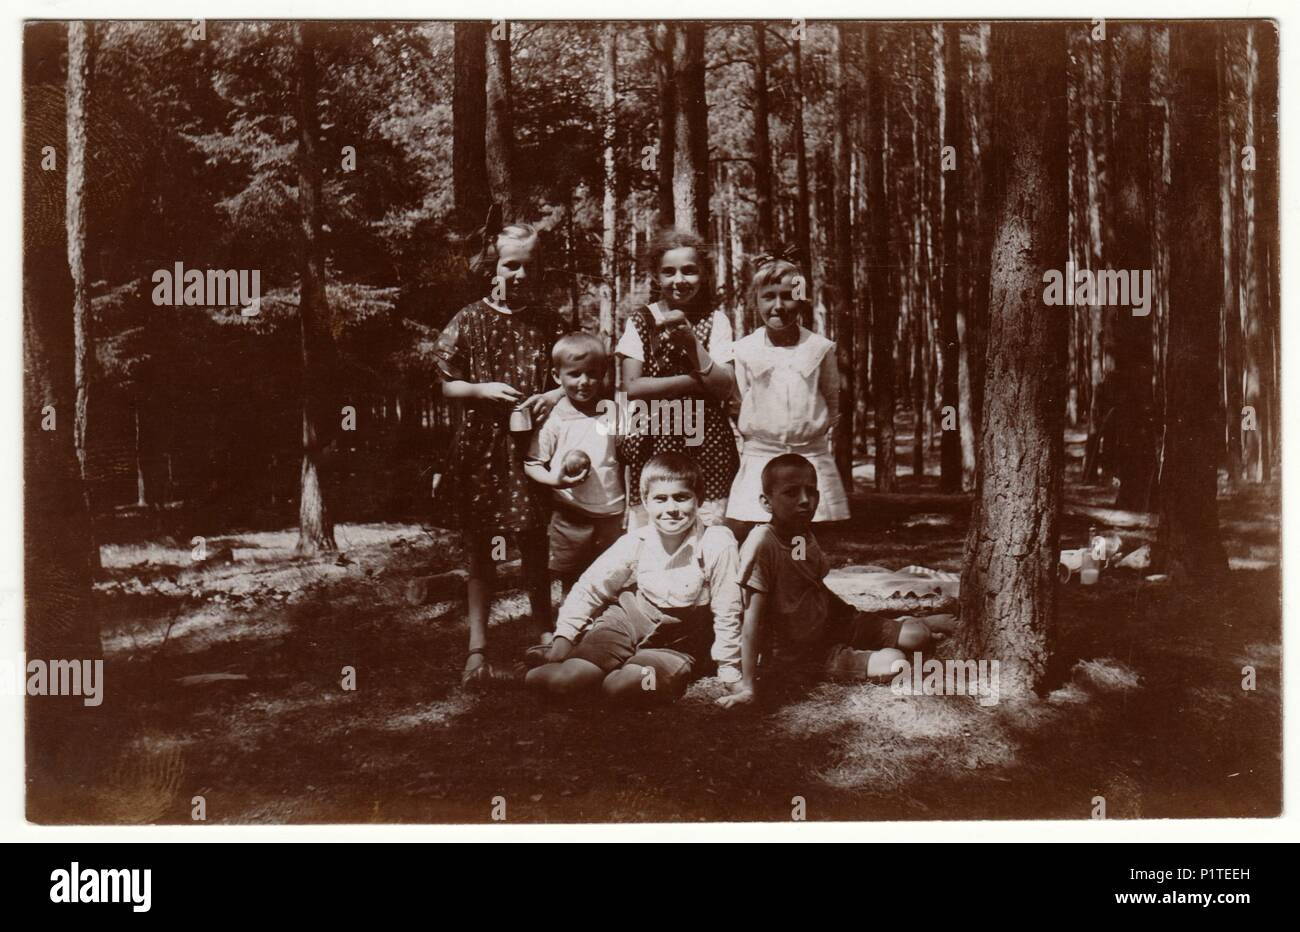 La Repubblica cecoslovacca - Luglio 1925: Vintage foto mostra i bambini nella foresta. Retrò fotografia in bianco e nero. Foto Stock